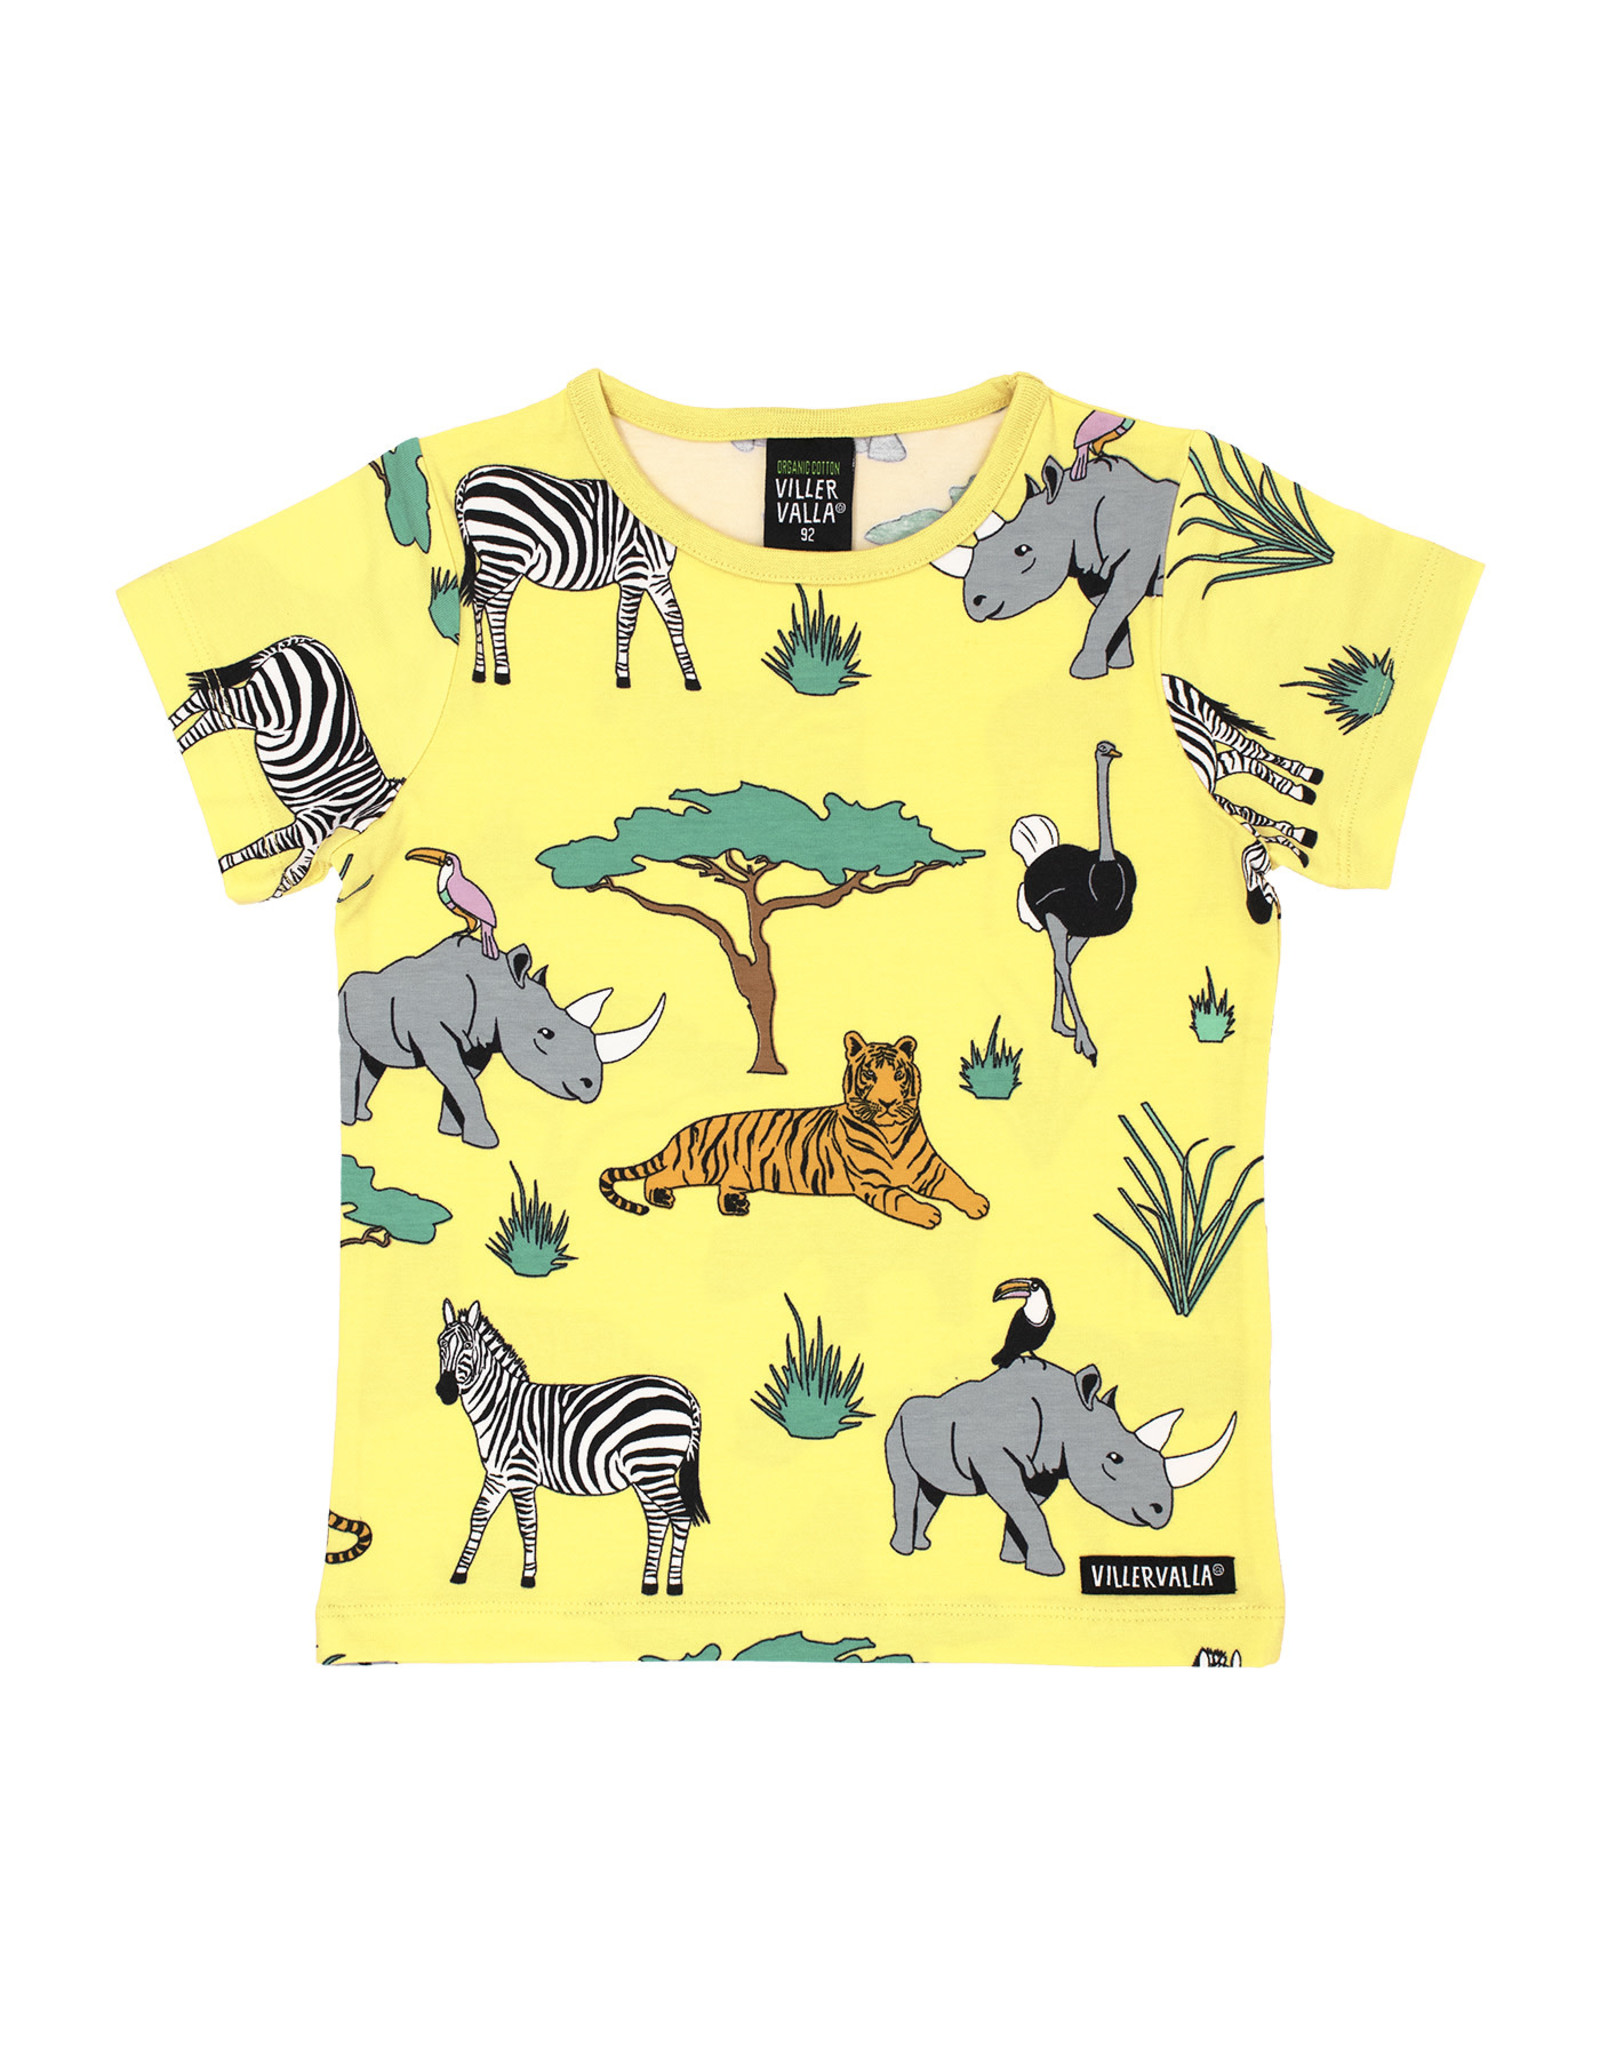 stil park astronaut Gele t-shirt met verschillende safari dieren Villervalla | hejsan.be -  Hejsan Hoppsan